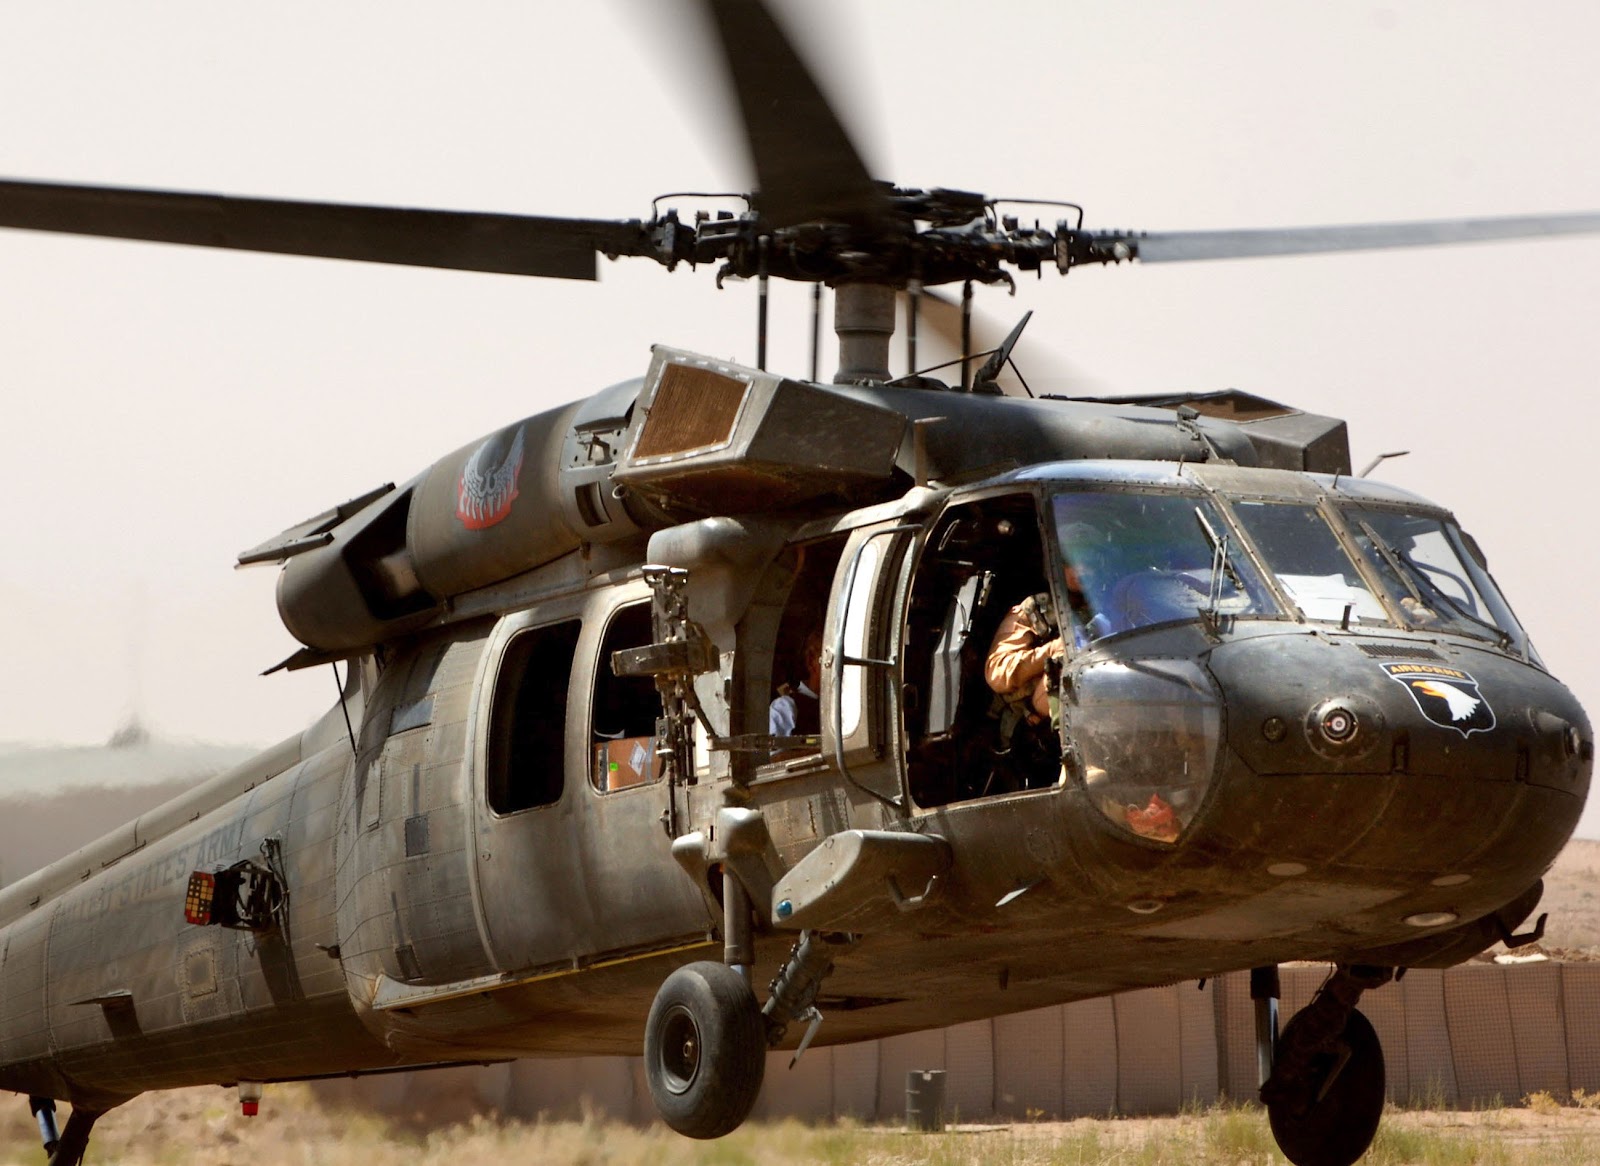 Сбит вертолет black hawk. Sikorsky uh-60 Black Hawk. Ah-60 Black Hawk. Вертолет MH-60k Blackhawk SOA. Черный ястреб вертолет.